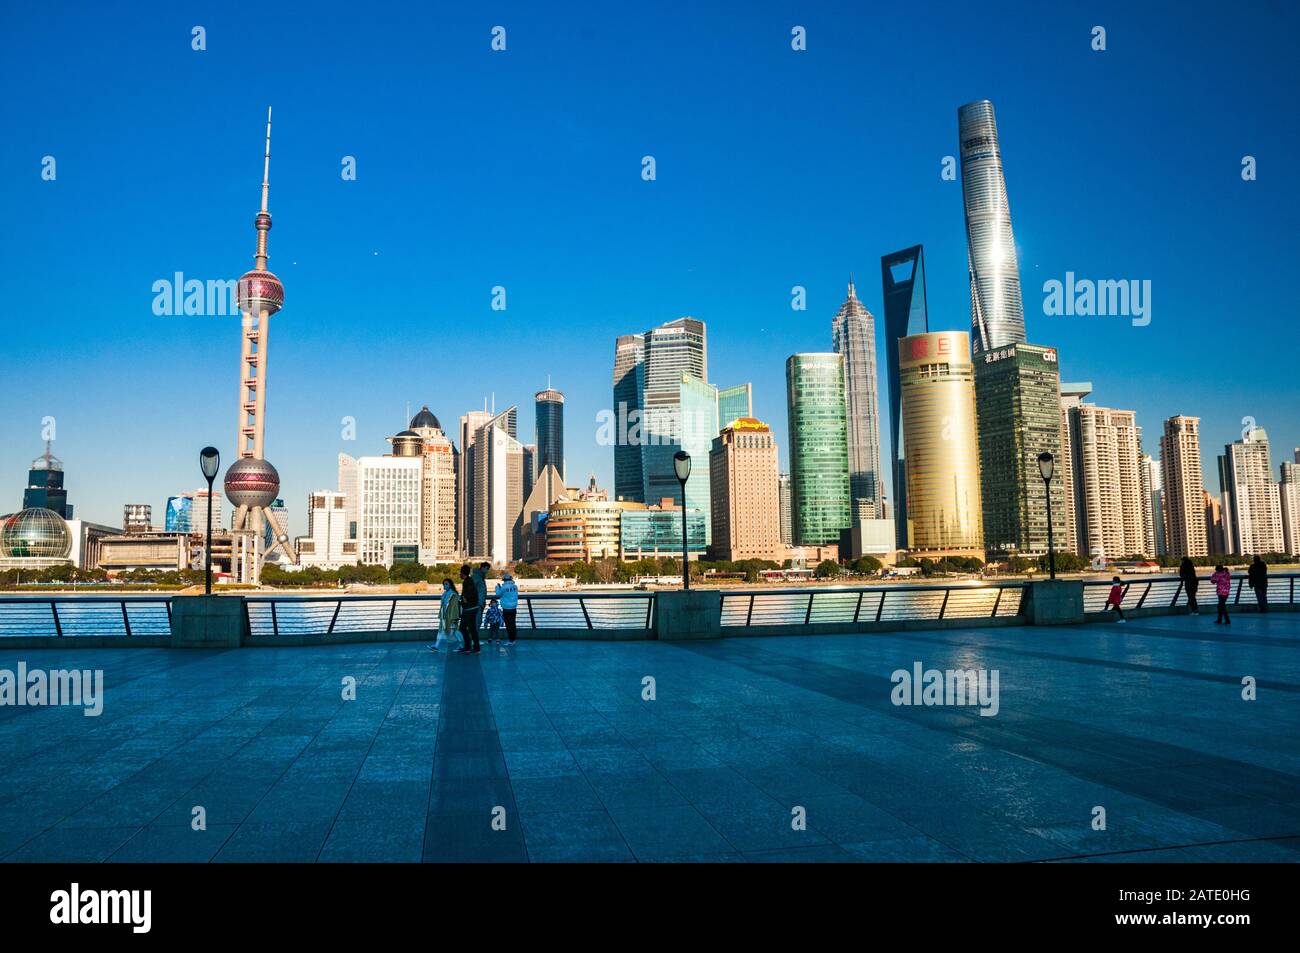 La pasarela de Shanghai Bund, que suele estar llena, está vacía debido al Coronavirus (neumonía Wuhan), con unos pocos turistas valientes y el horizonte de Pudong detrás. Foto de stock